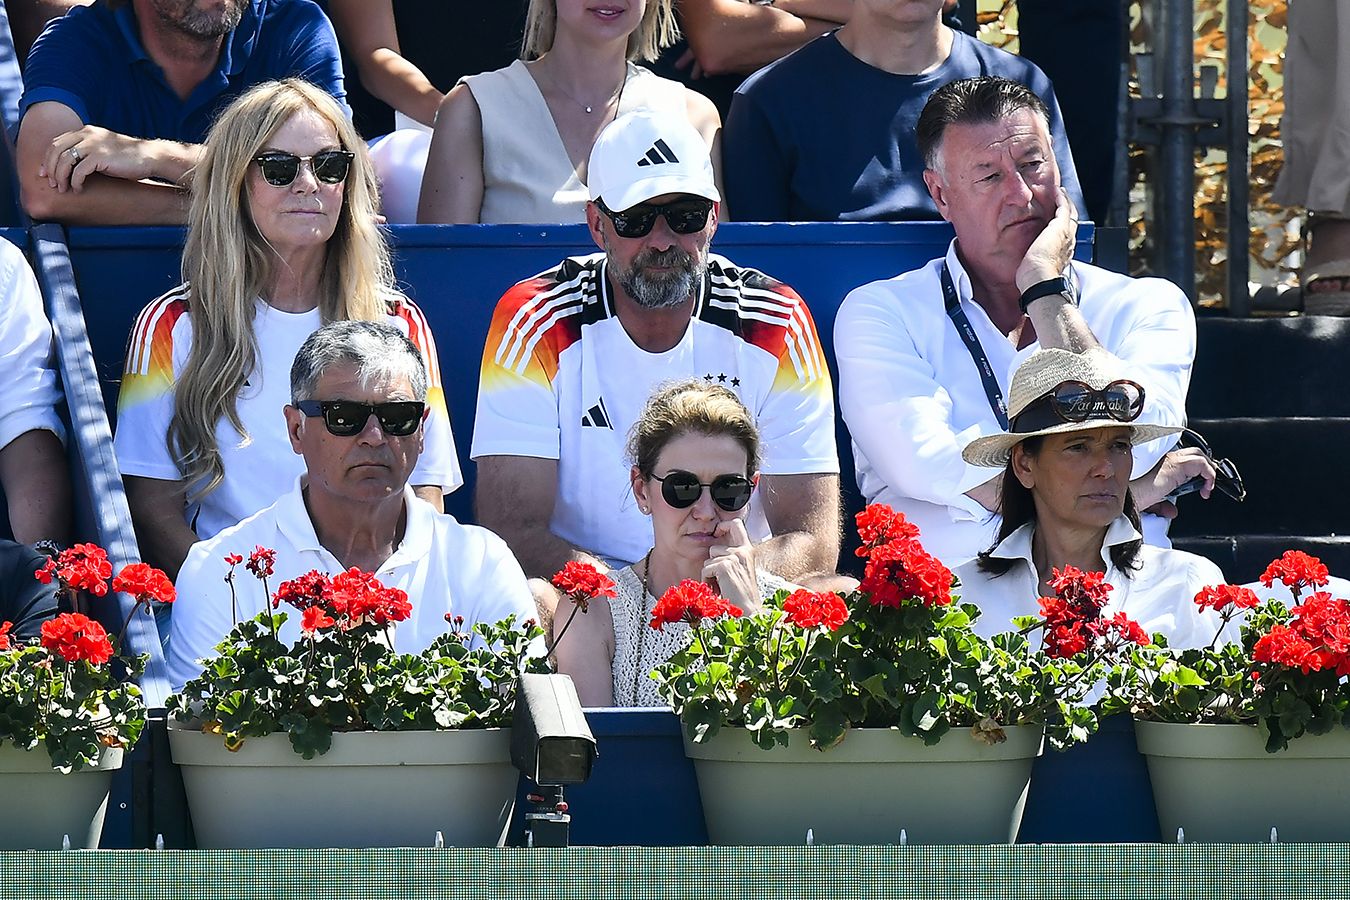 Юрген Клопп в футболке сборной Германии посетил теннисный турнир на Мальорке